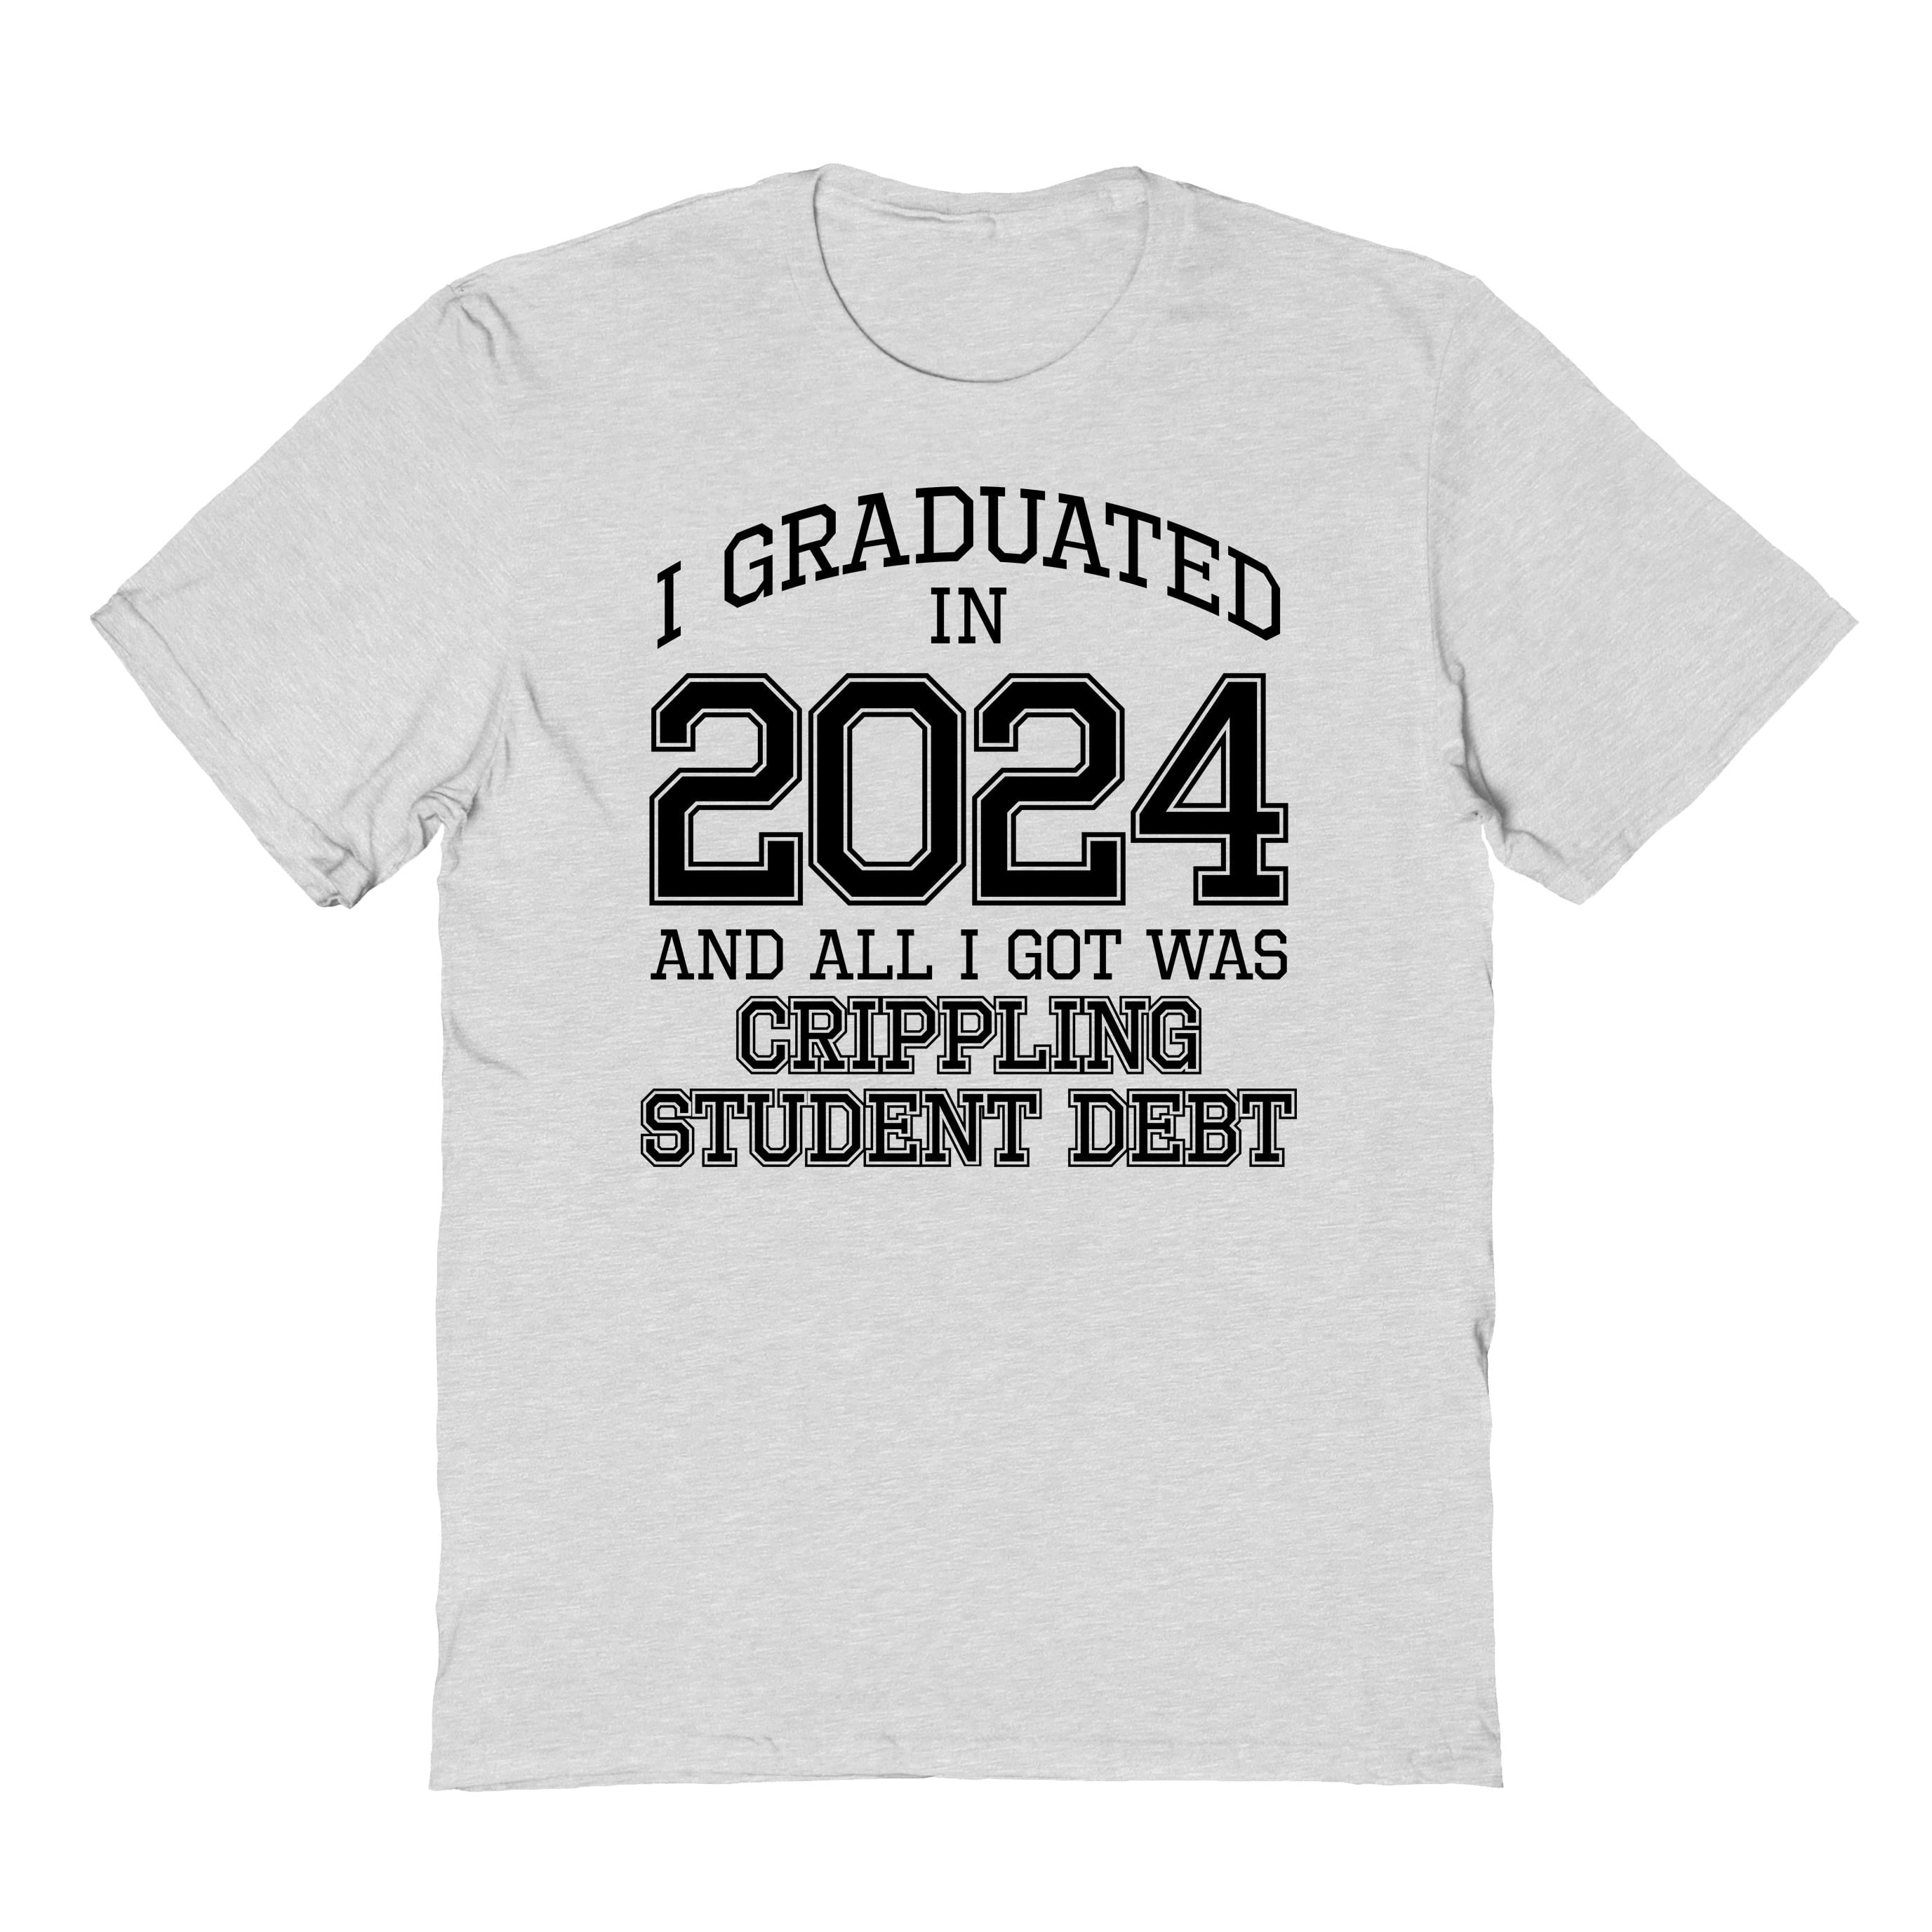 I Graduated In 2024 ash grey T-Shirt - Walmart.com